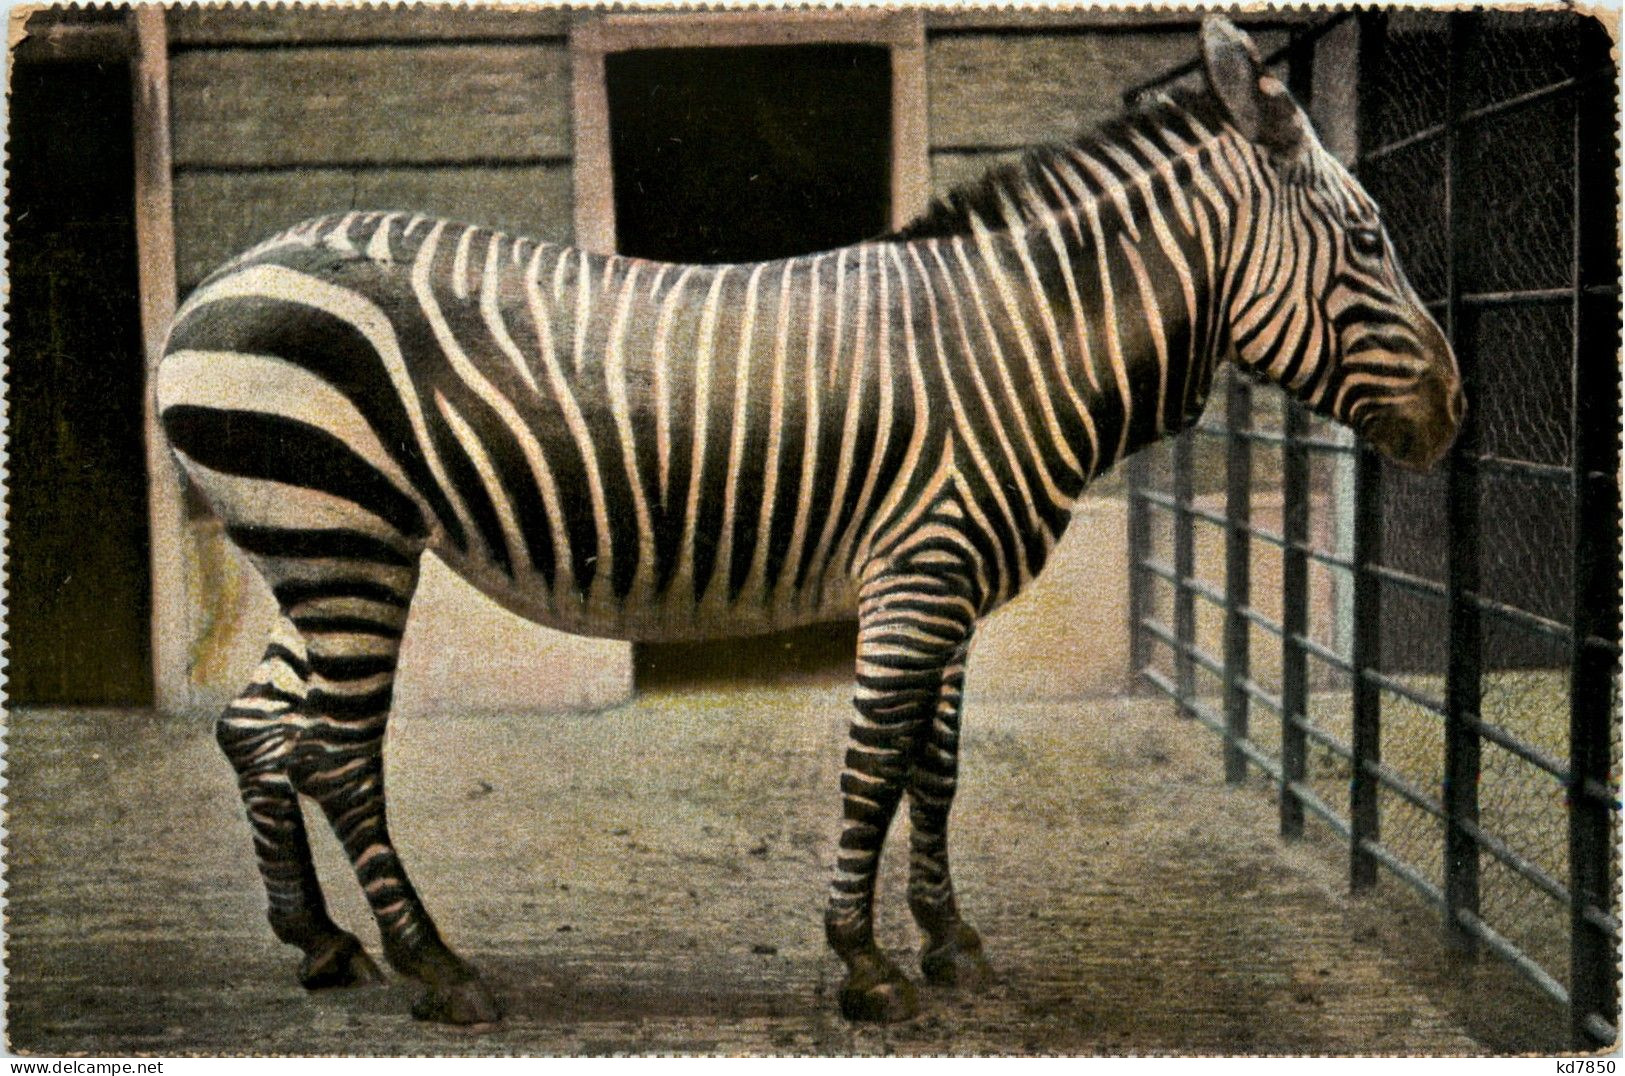 Zebra - Horses